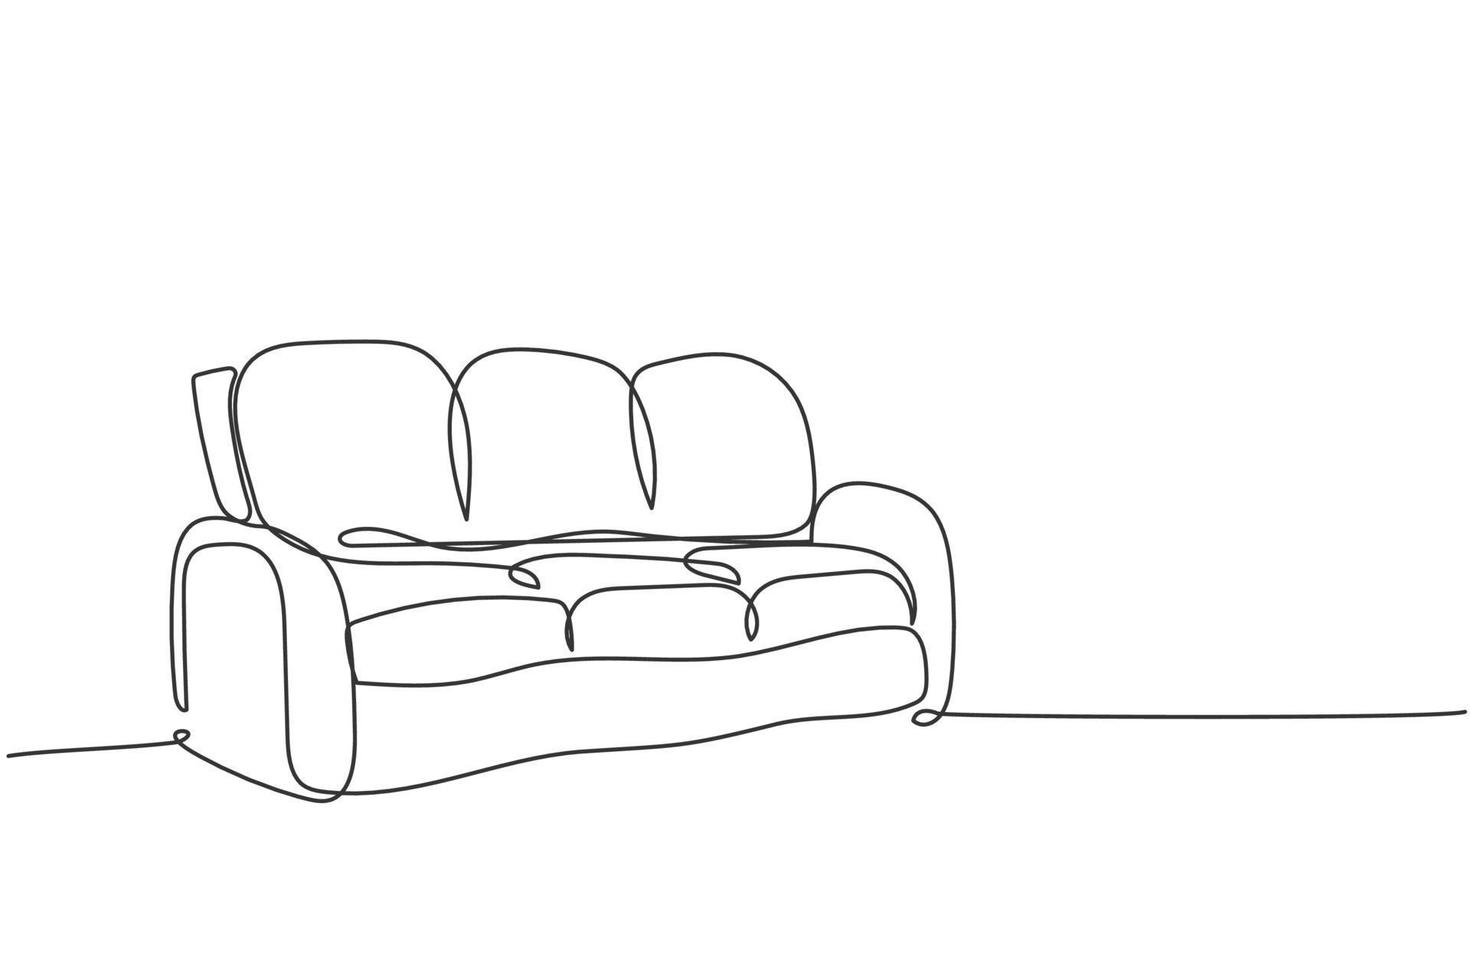 un dessin au trait continu d'un appareil ménager de canapé en cuir confortable et élégant. concept de modèle de mobilier de canapé de salon confortable. illustration graphique de vecteur de conception de dessin de ligne unique à la mode